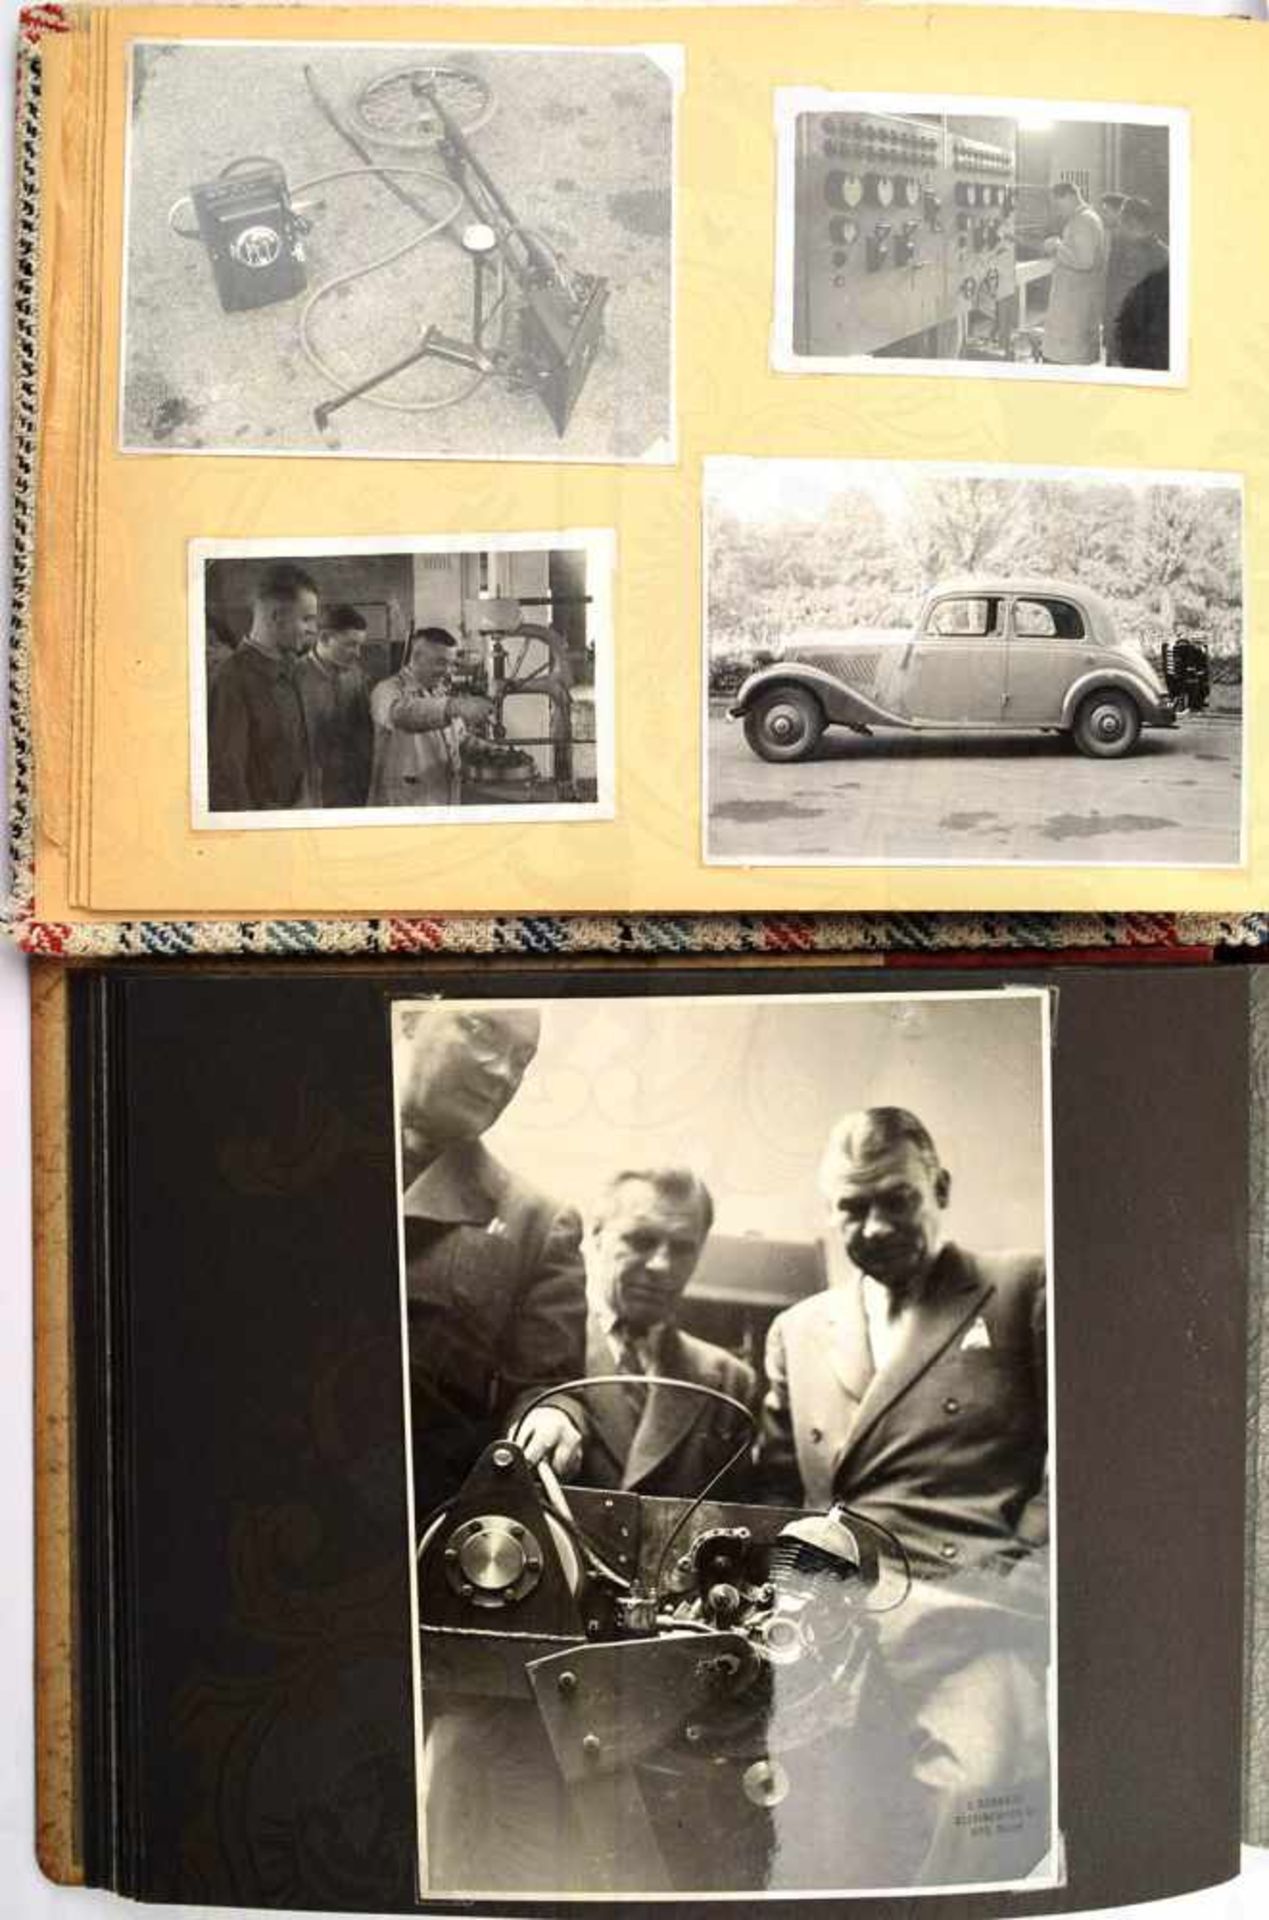 3 FOTOALBEN EINES AUTOINGENIEURS, gesamt 395 Fotos, ca. 1925-1955, teils AK bis A 5, viele PKW, auch - Bild 3 aus 14